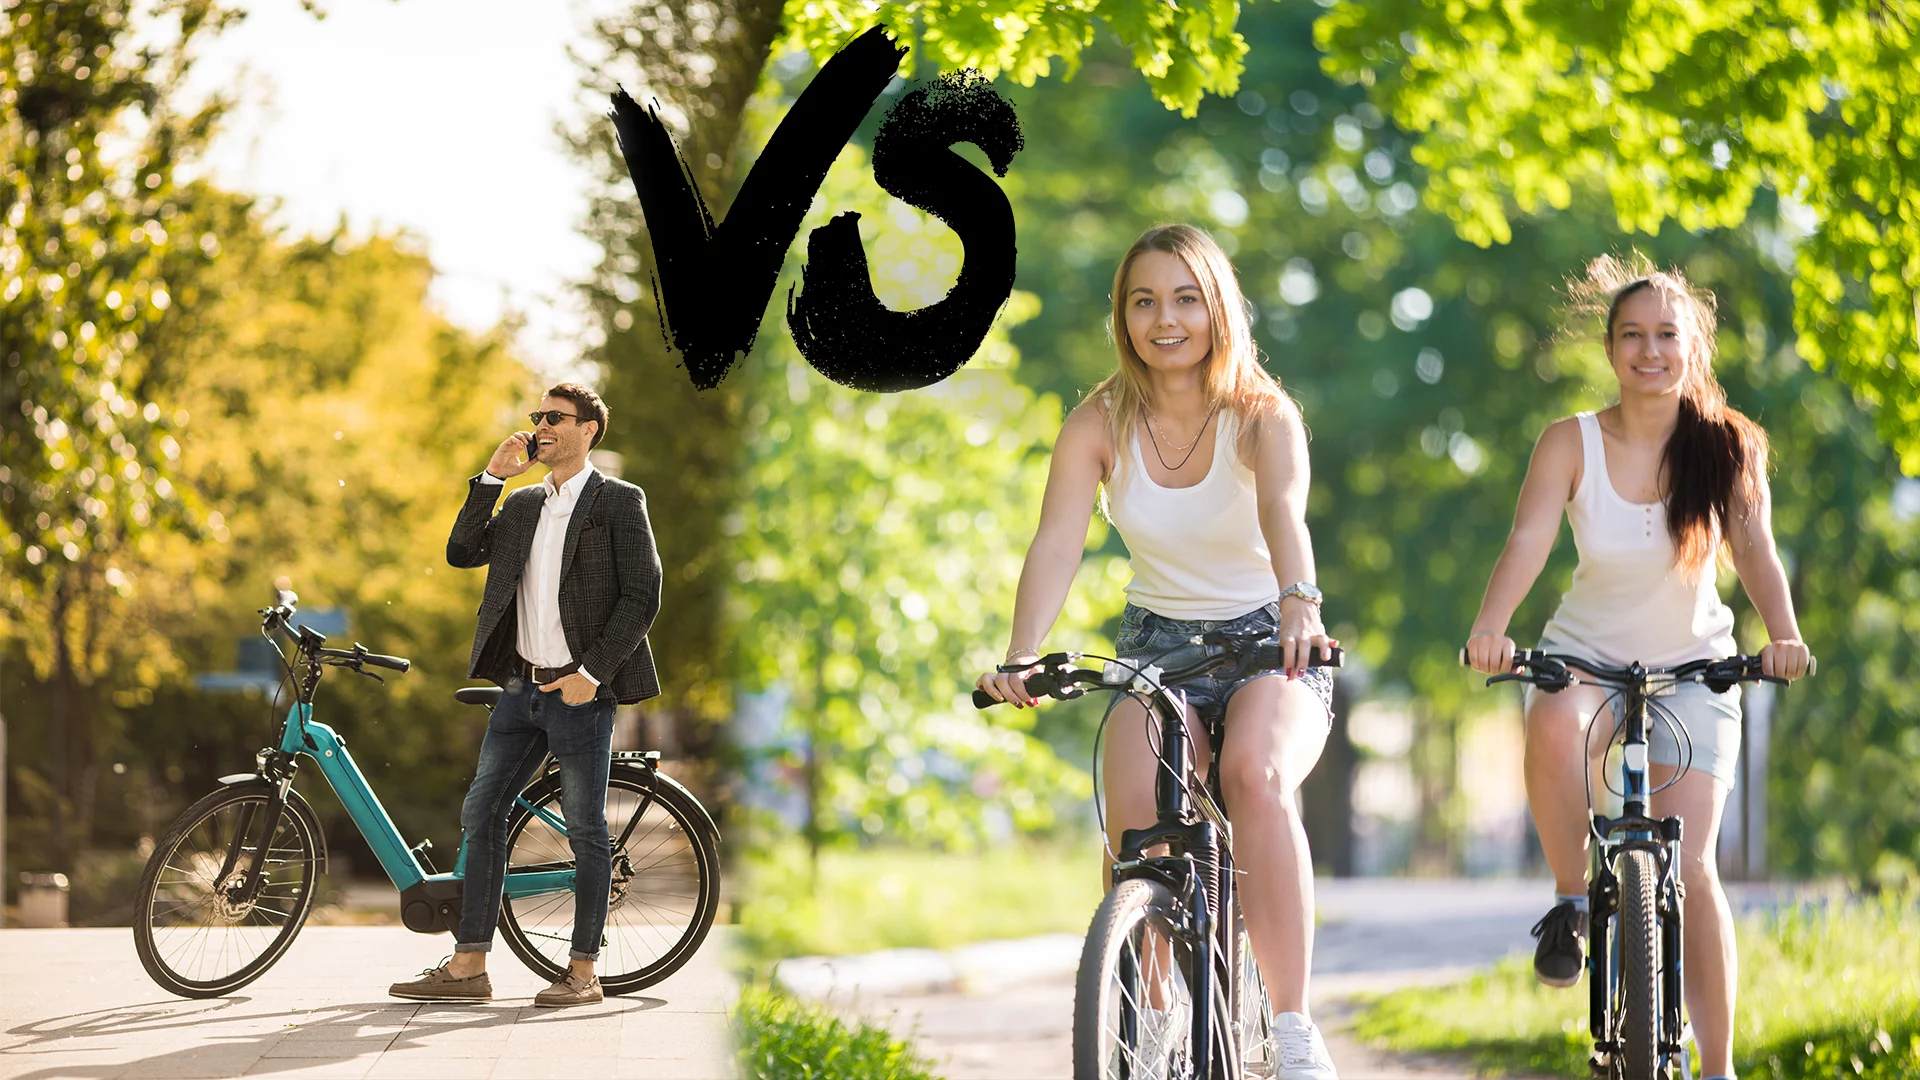 Vélo simple vs vélo électrique : lequel est bénéfique pour la santé?